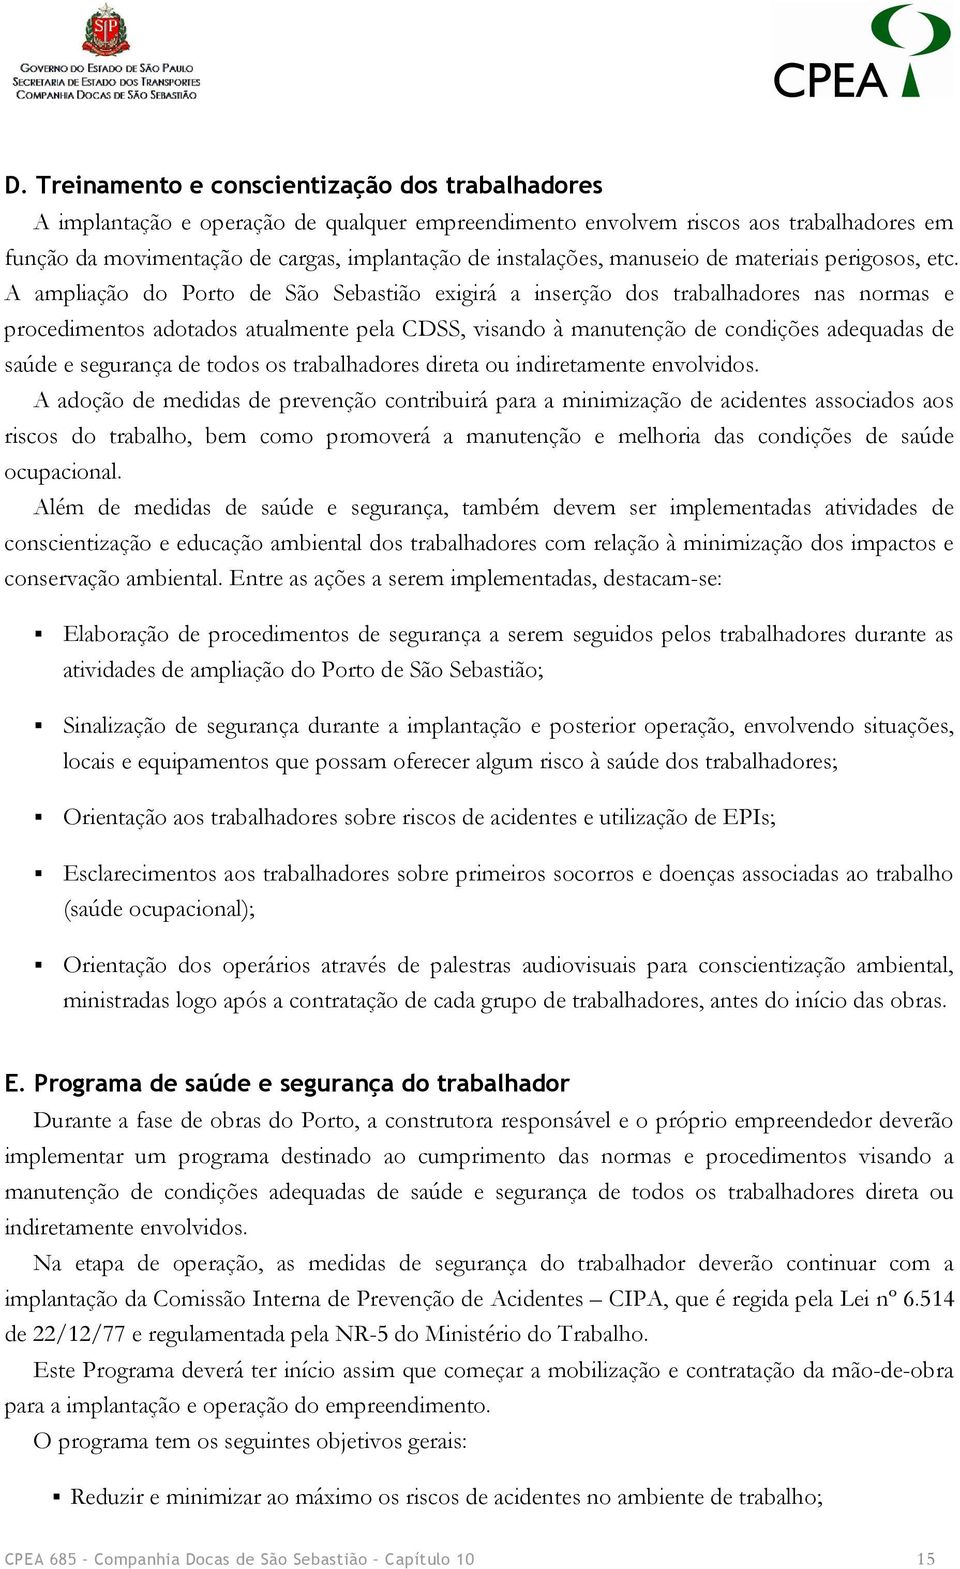 A ampliação do Porto de São Sebastião exigirá a inserção dos trabalhadores nas normas e procedimentos adotados atualmente pela CDSS, visando à manutenção de condições adequadas de saúde e segurança